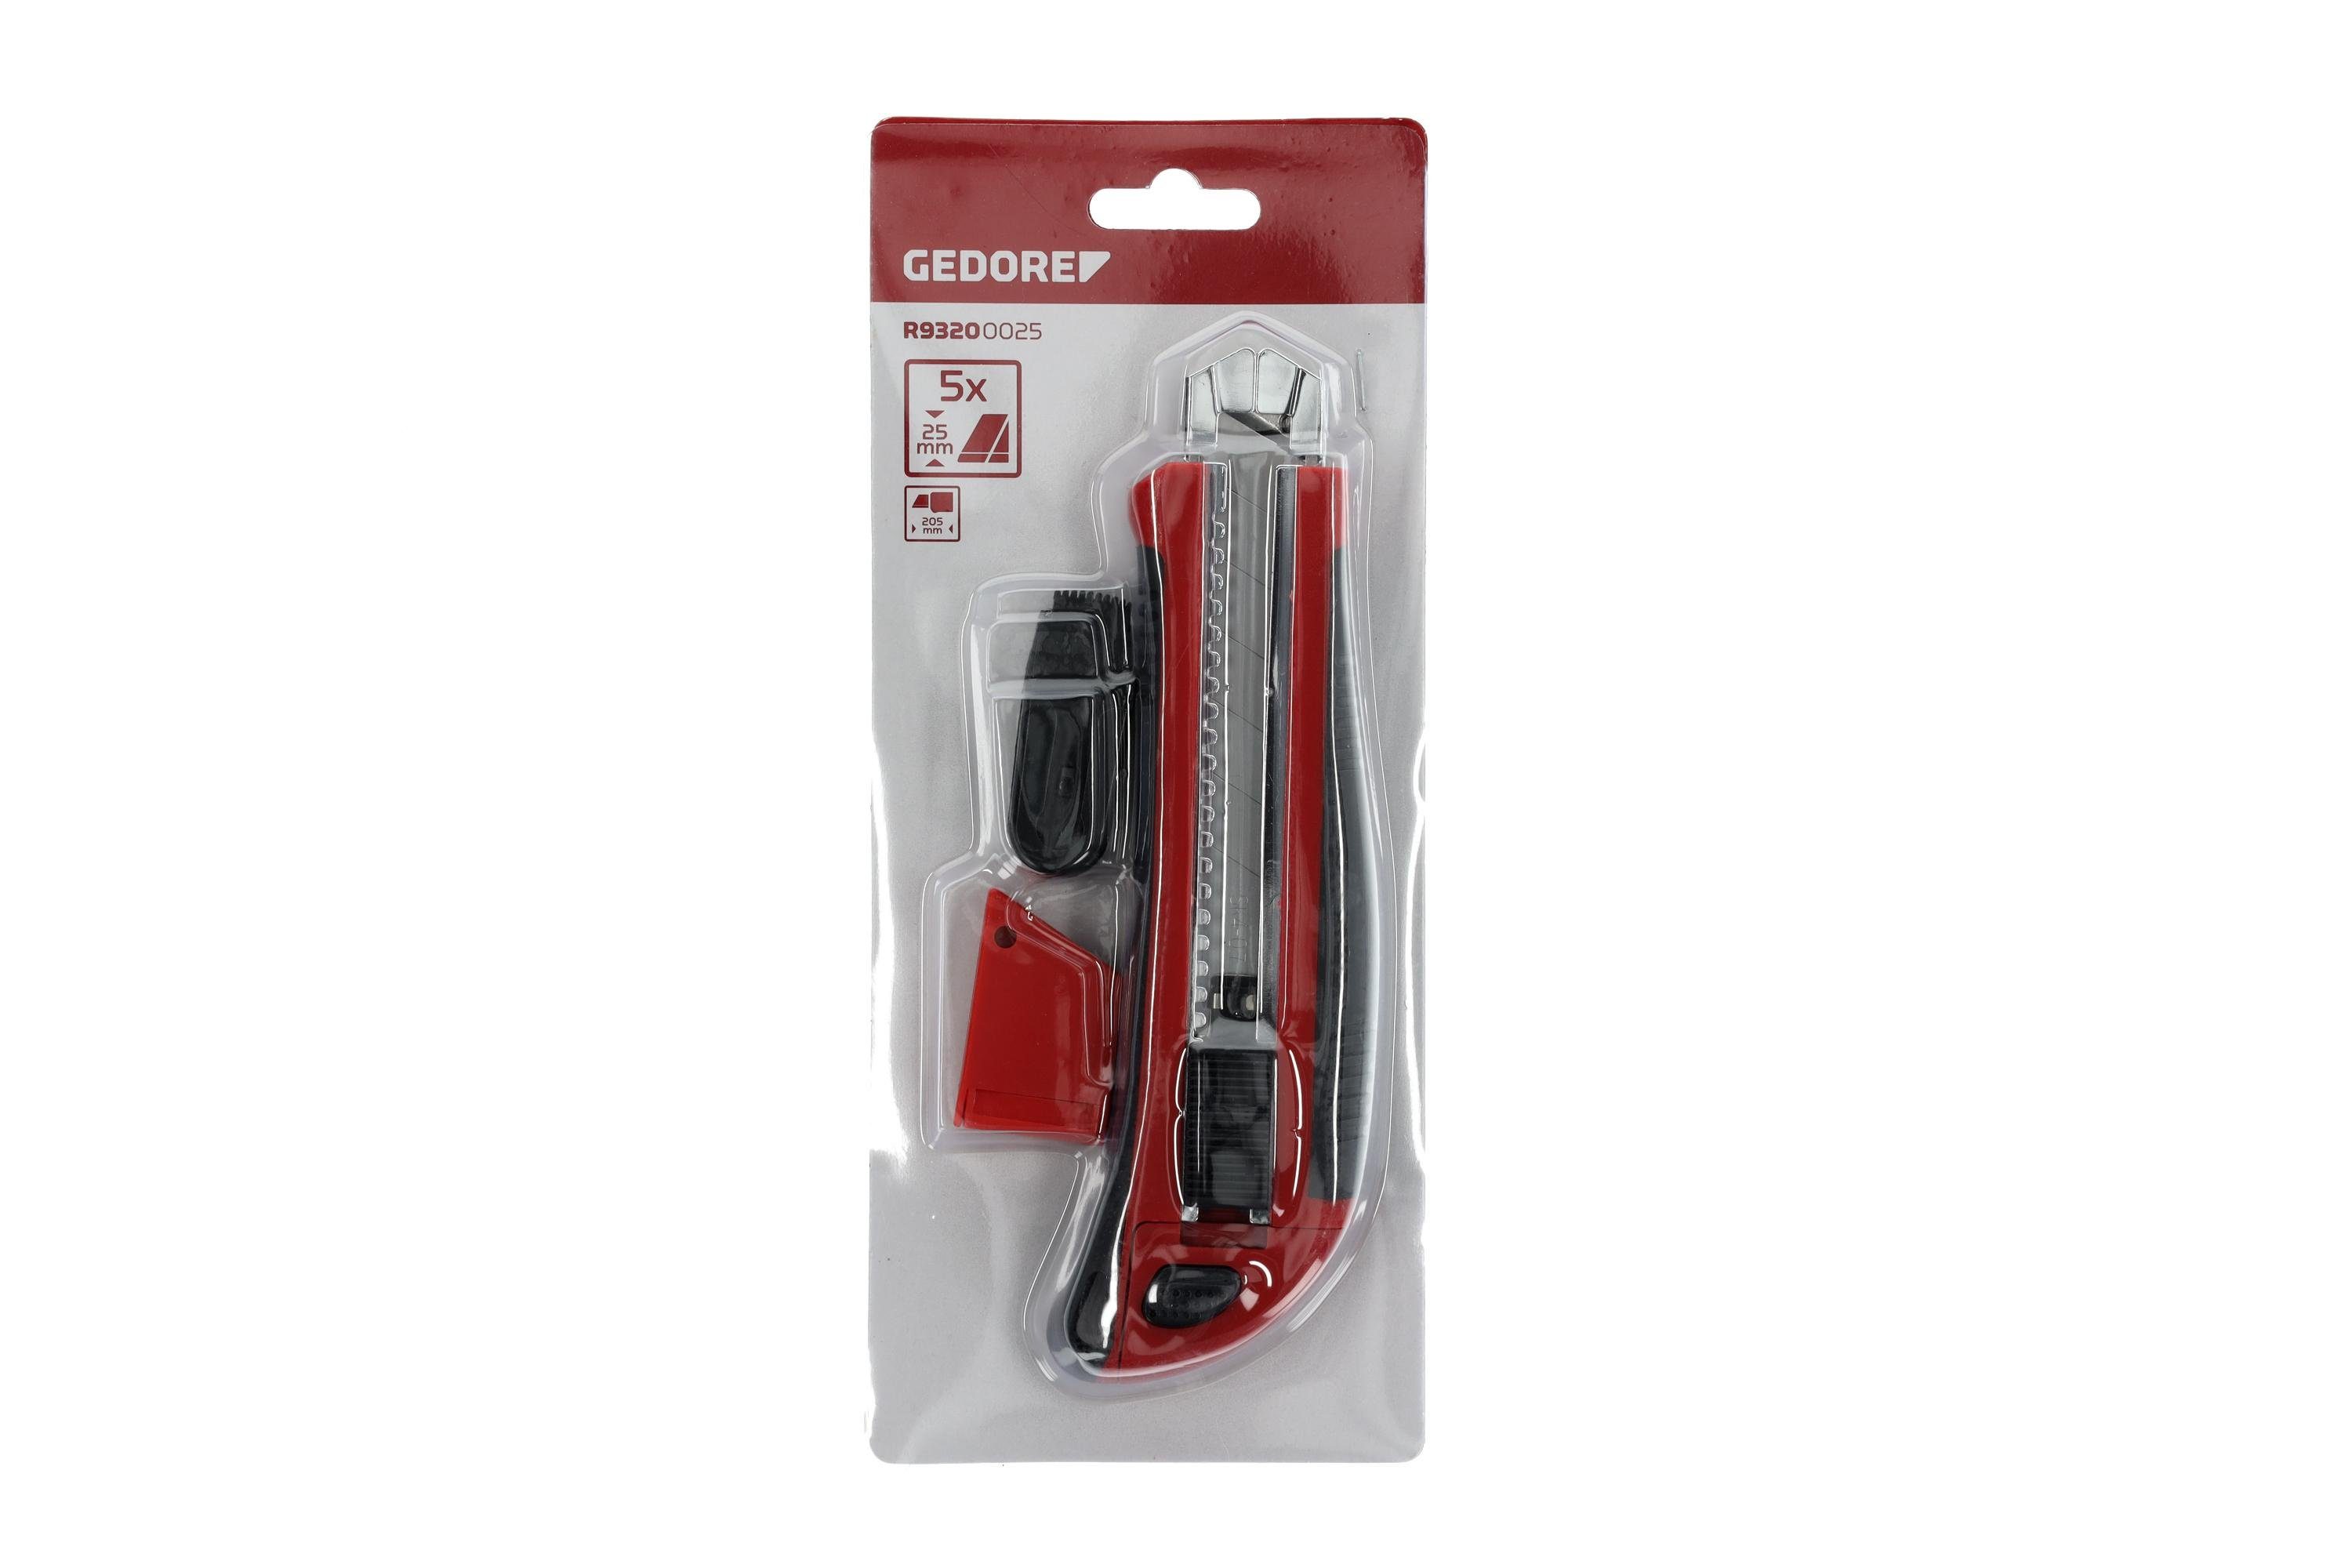 Cuttermesser Cuttermesser 25 Klingenbreite Clip Red mm Gedore R93200025 5 mit